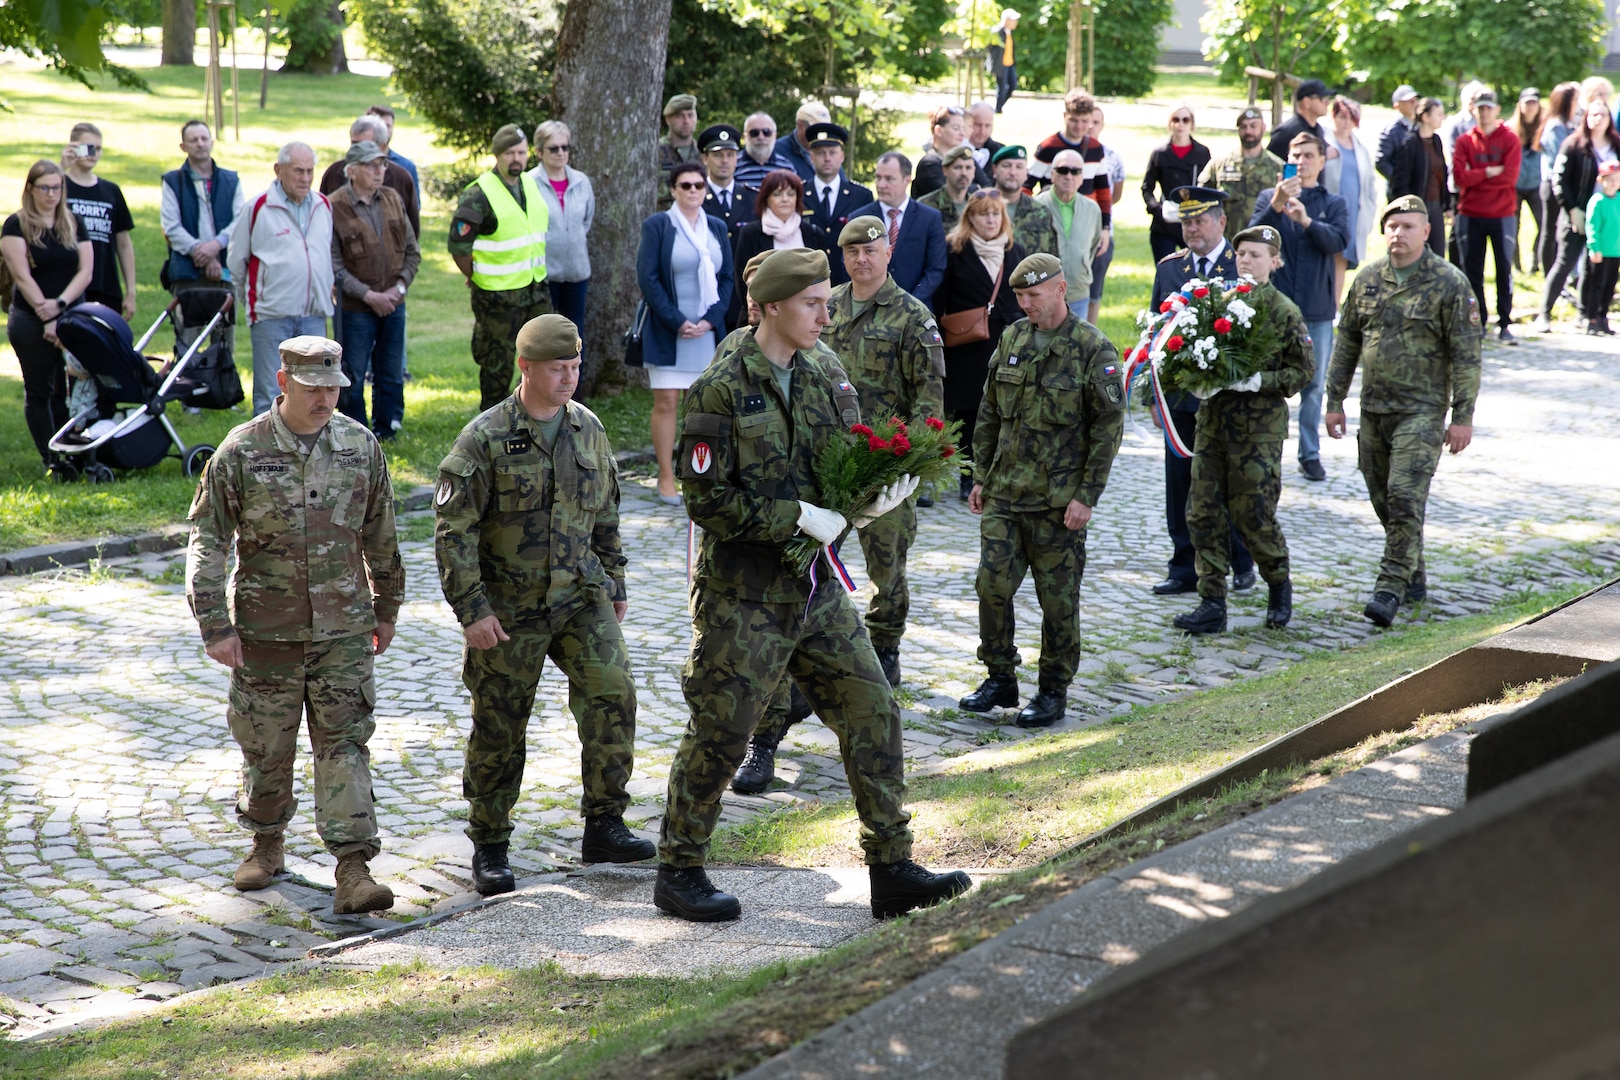 Vojáci gardy, čeští spojenci slaví vítězství v Den Evropy > Národní garda > Zprávy o zahraničních operacích